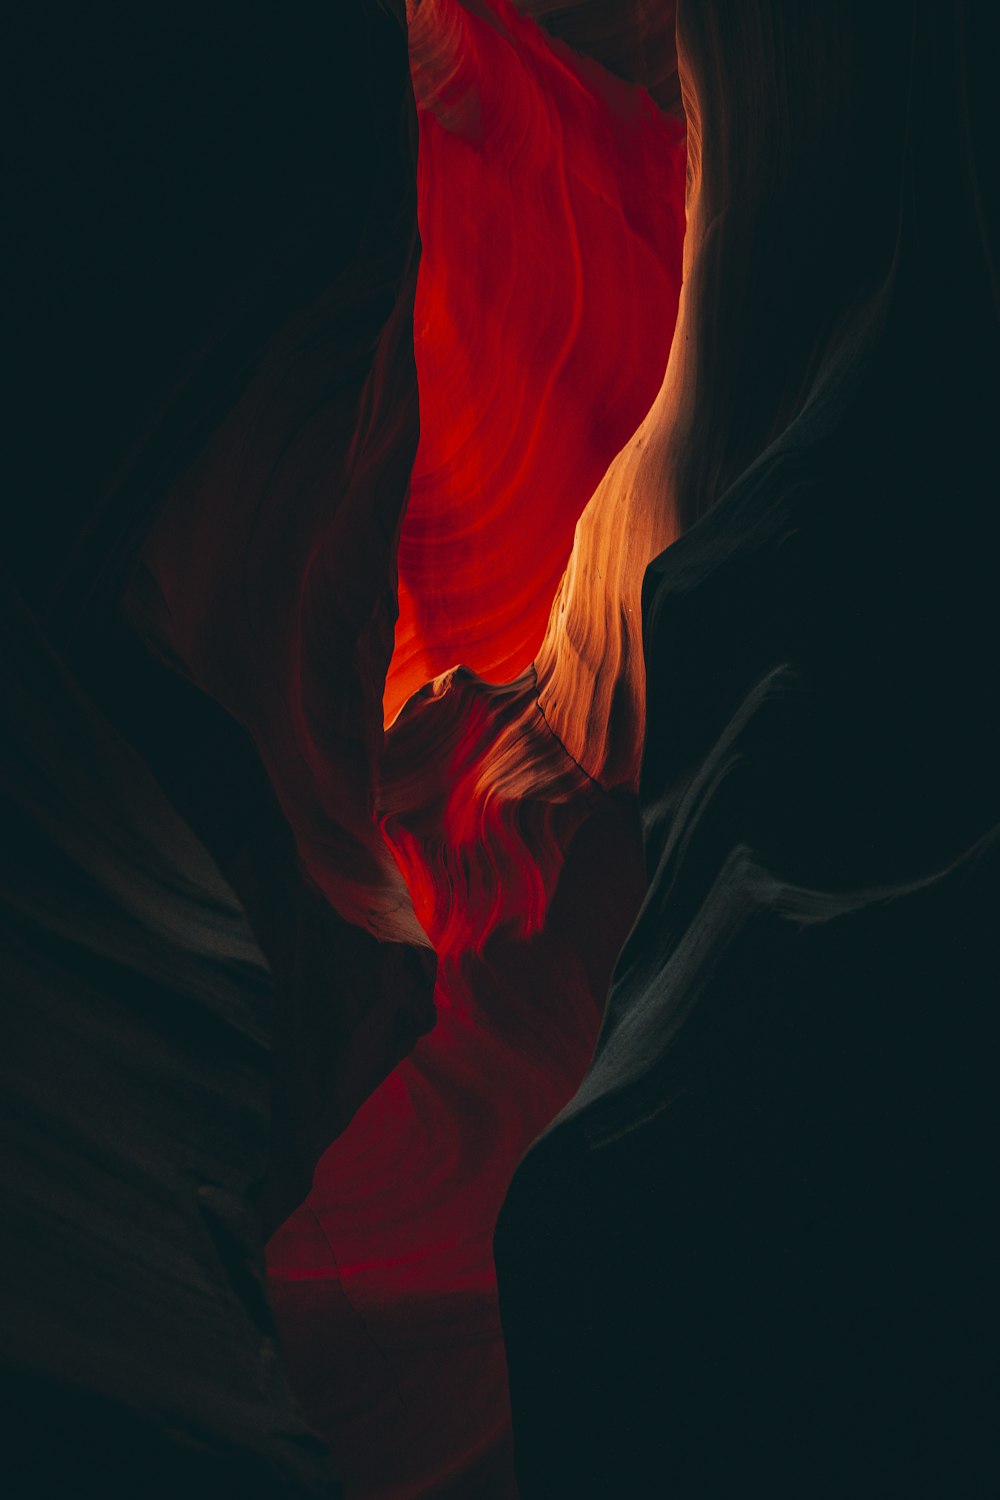 Una foto roja y negra de una formación rocosa